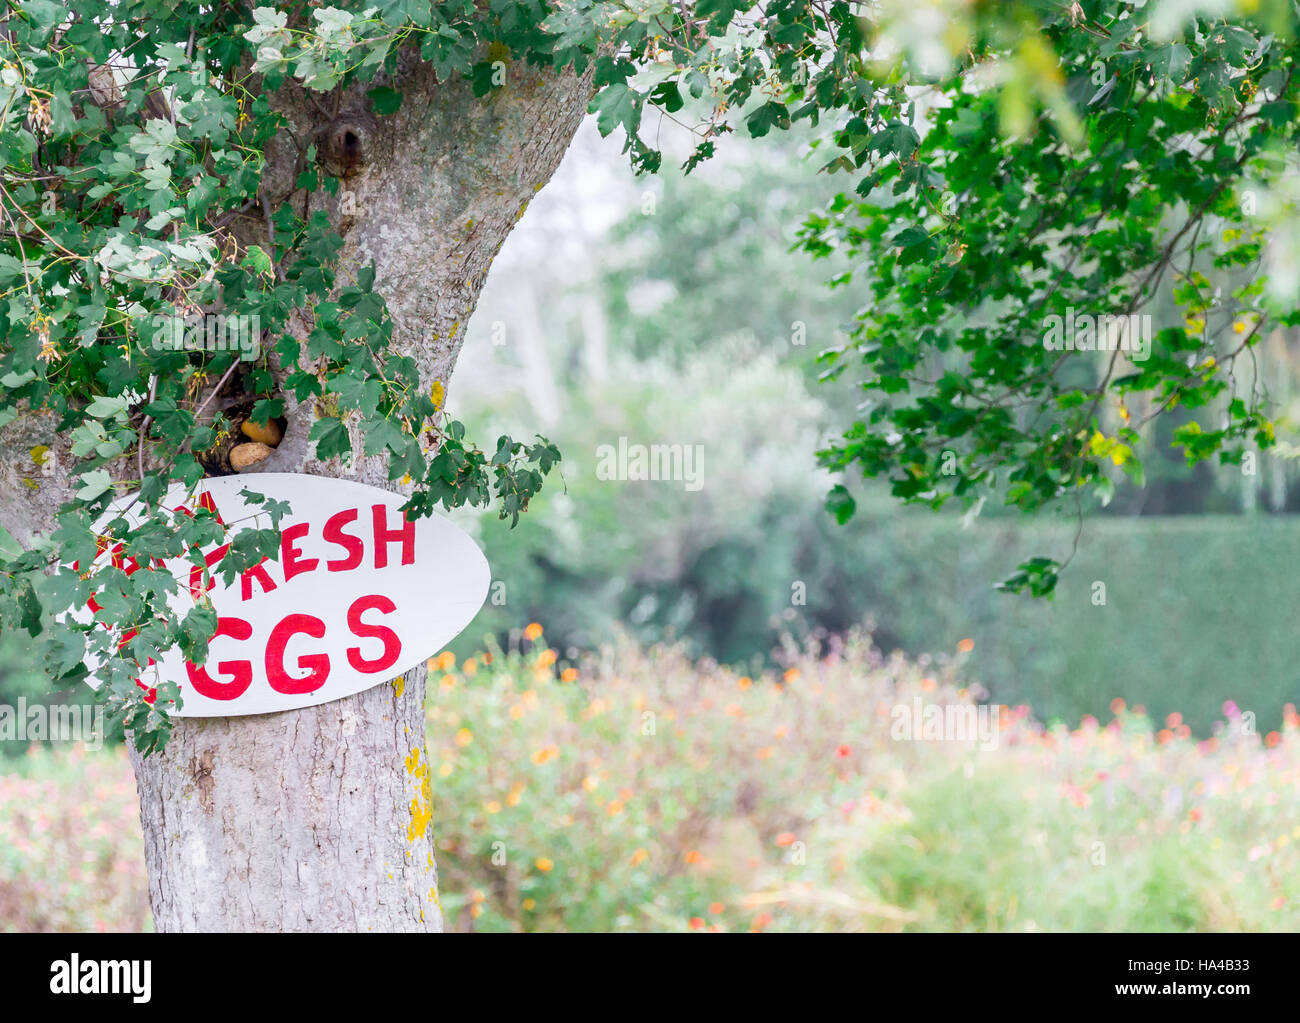 Dipinto a mano segno pubblicità uova fresche per la vendita, attaccato ad un vecchio albero Foto Stock